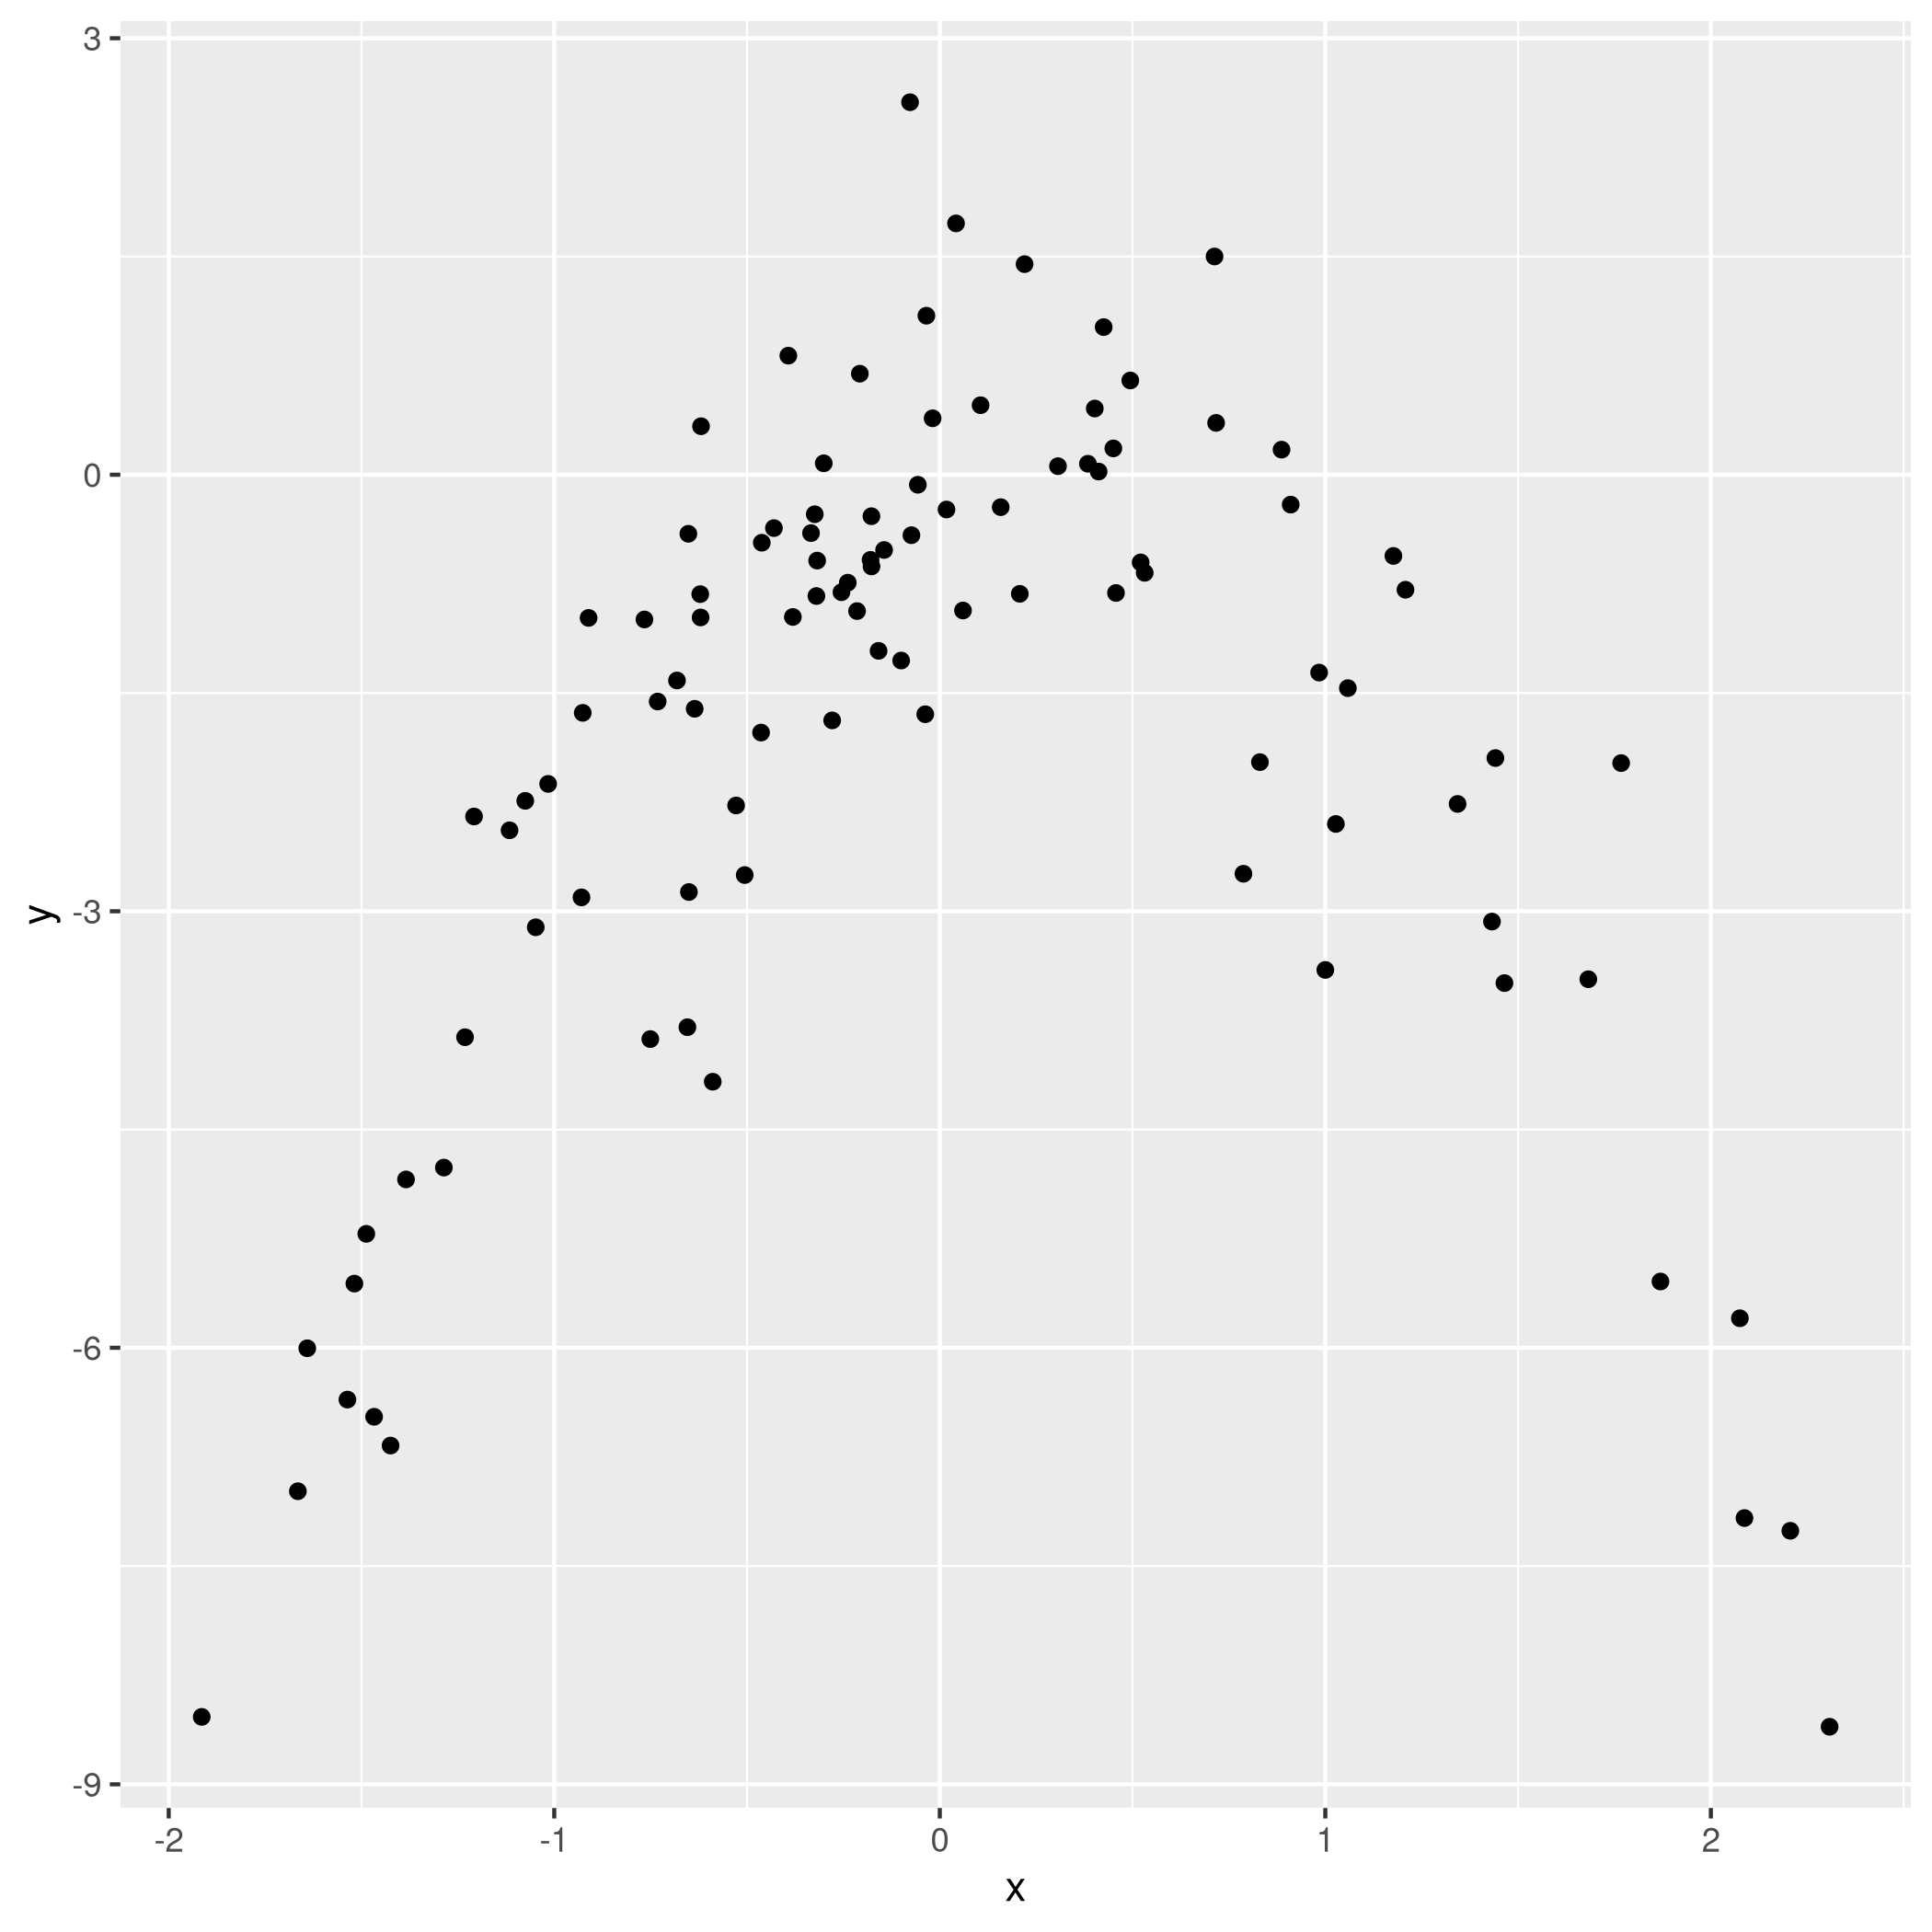 Figure 10: Model data plot